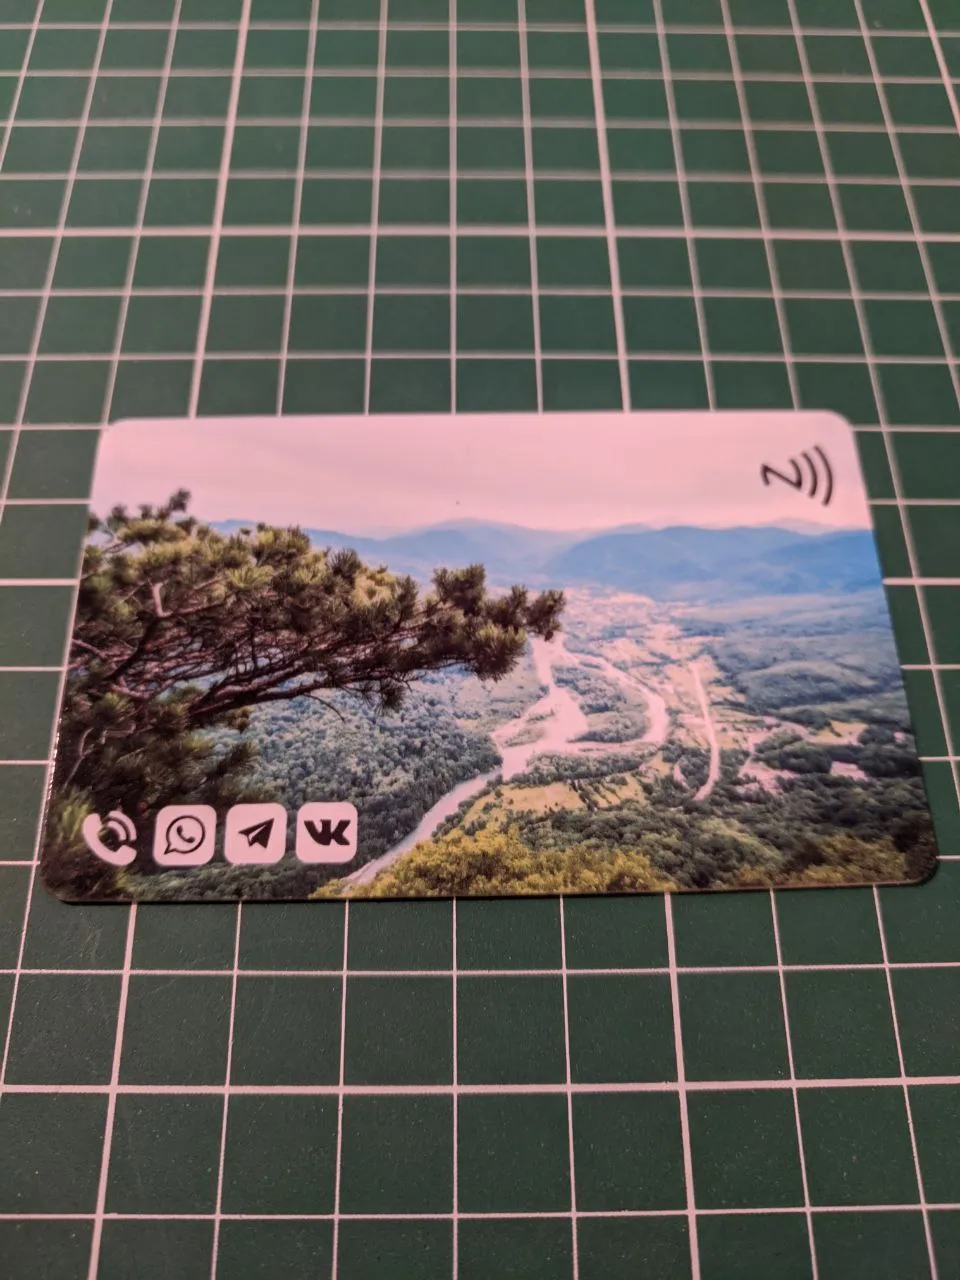 Бесконтактная Умная визитки в подарок на Юбилей
Примеры индивидуального дизайна визитки из пластика с NFC чипом и QR-кодом.